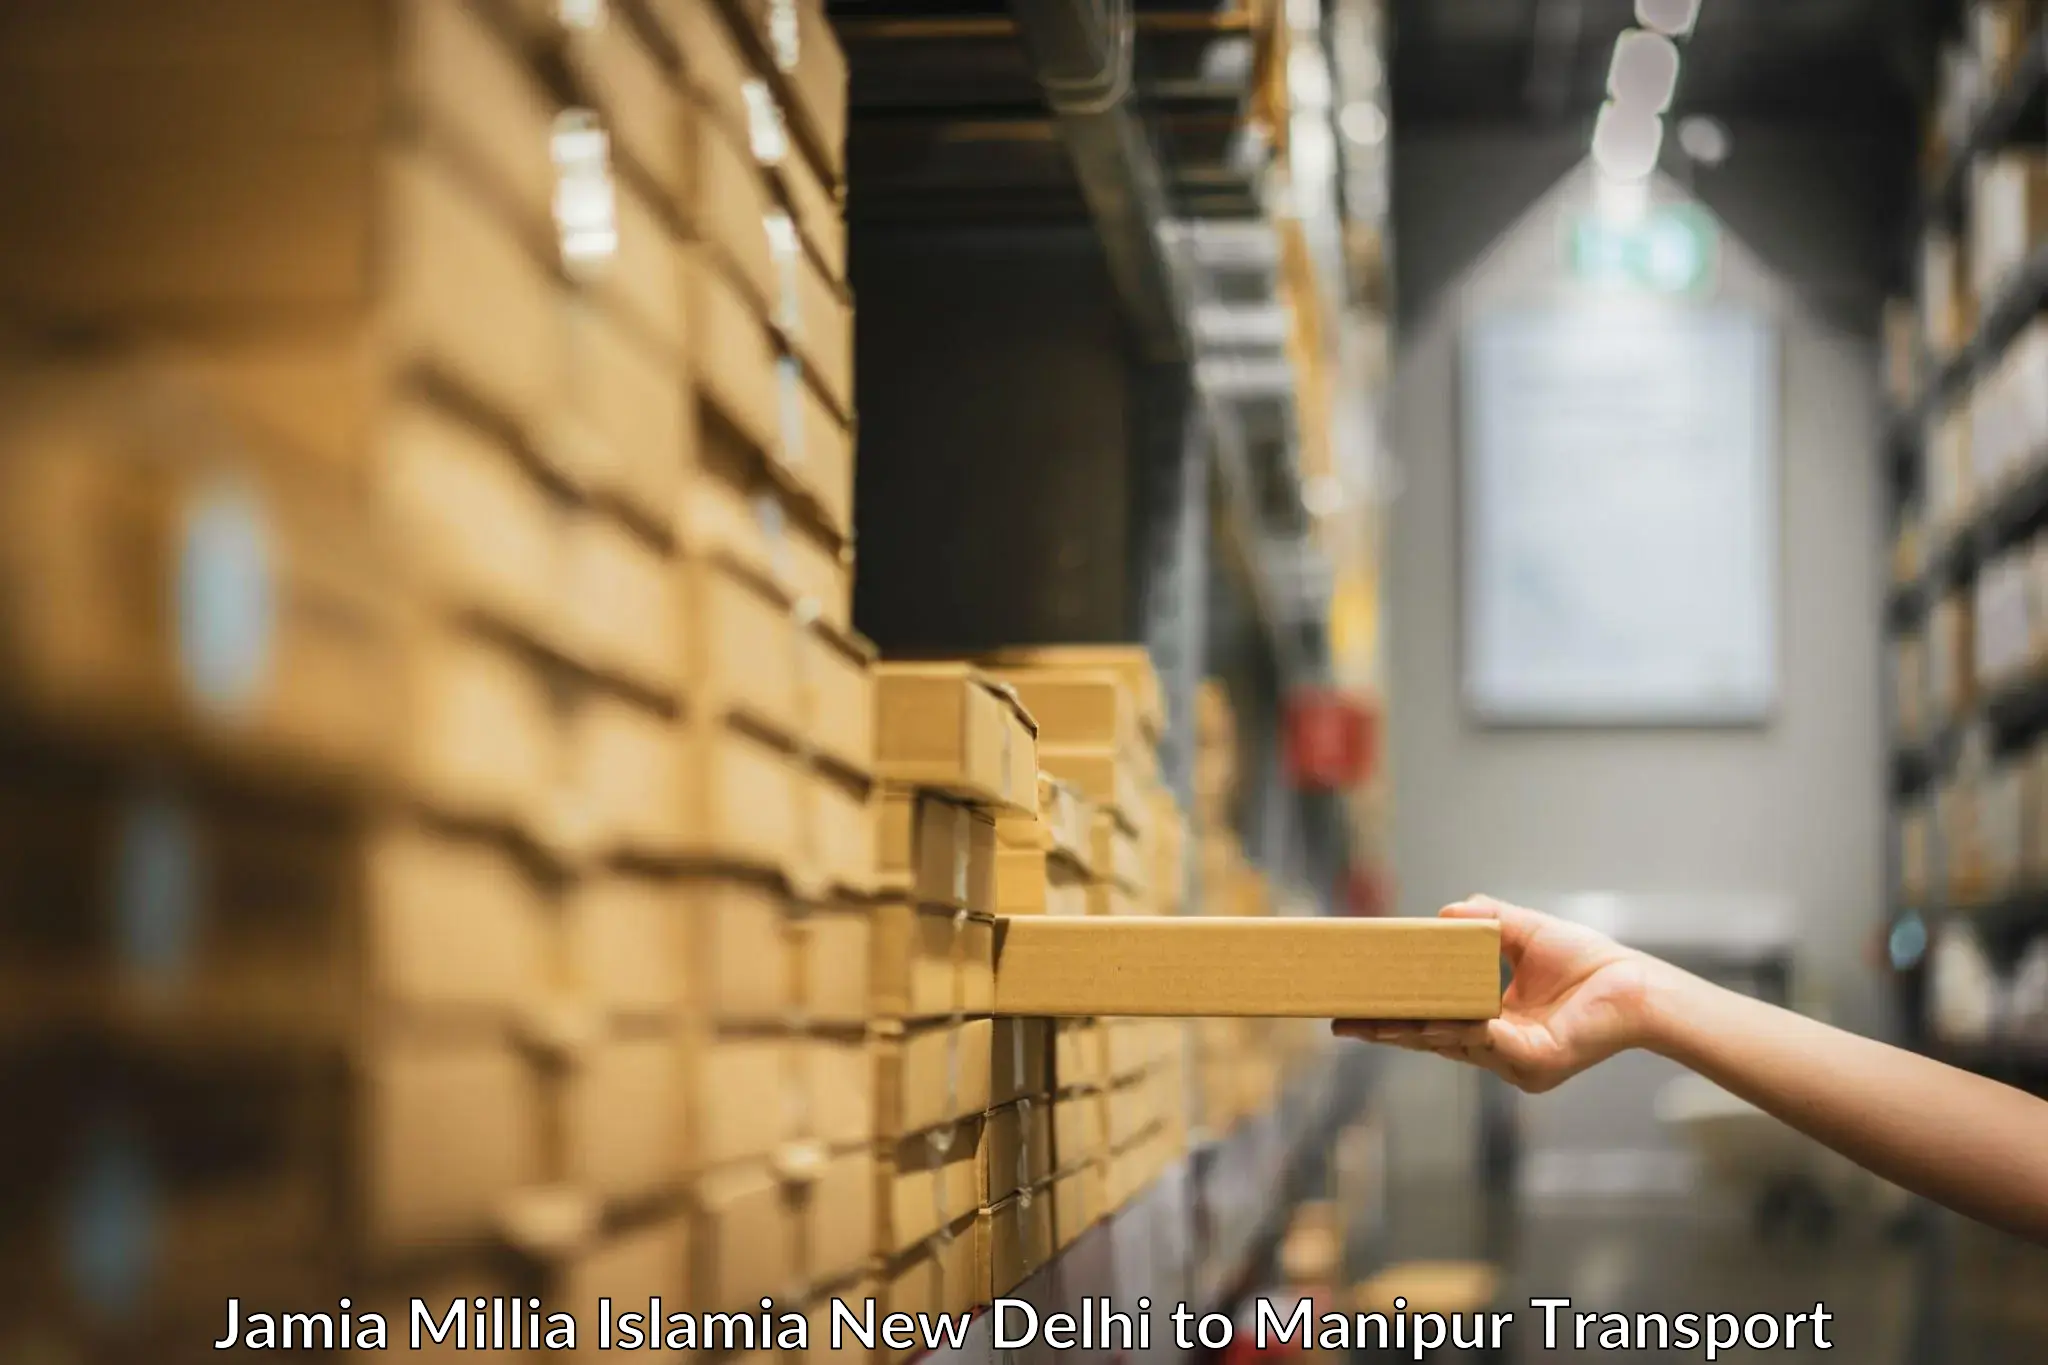 Express transport services Jamia Millia Islamia New Delhi to Kanti